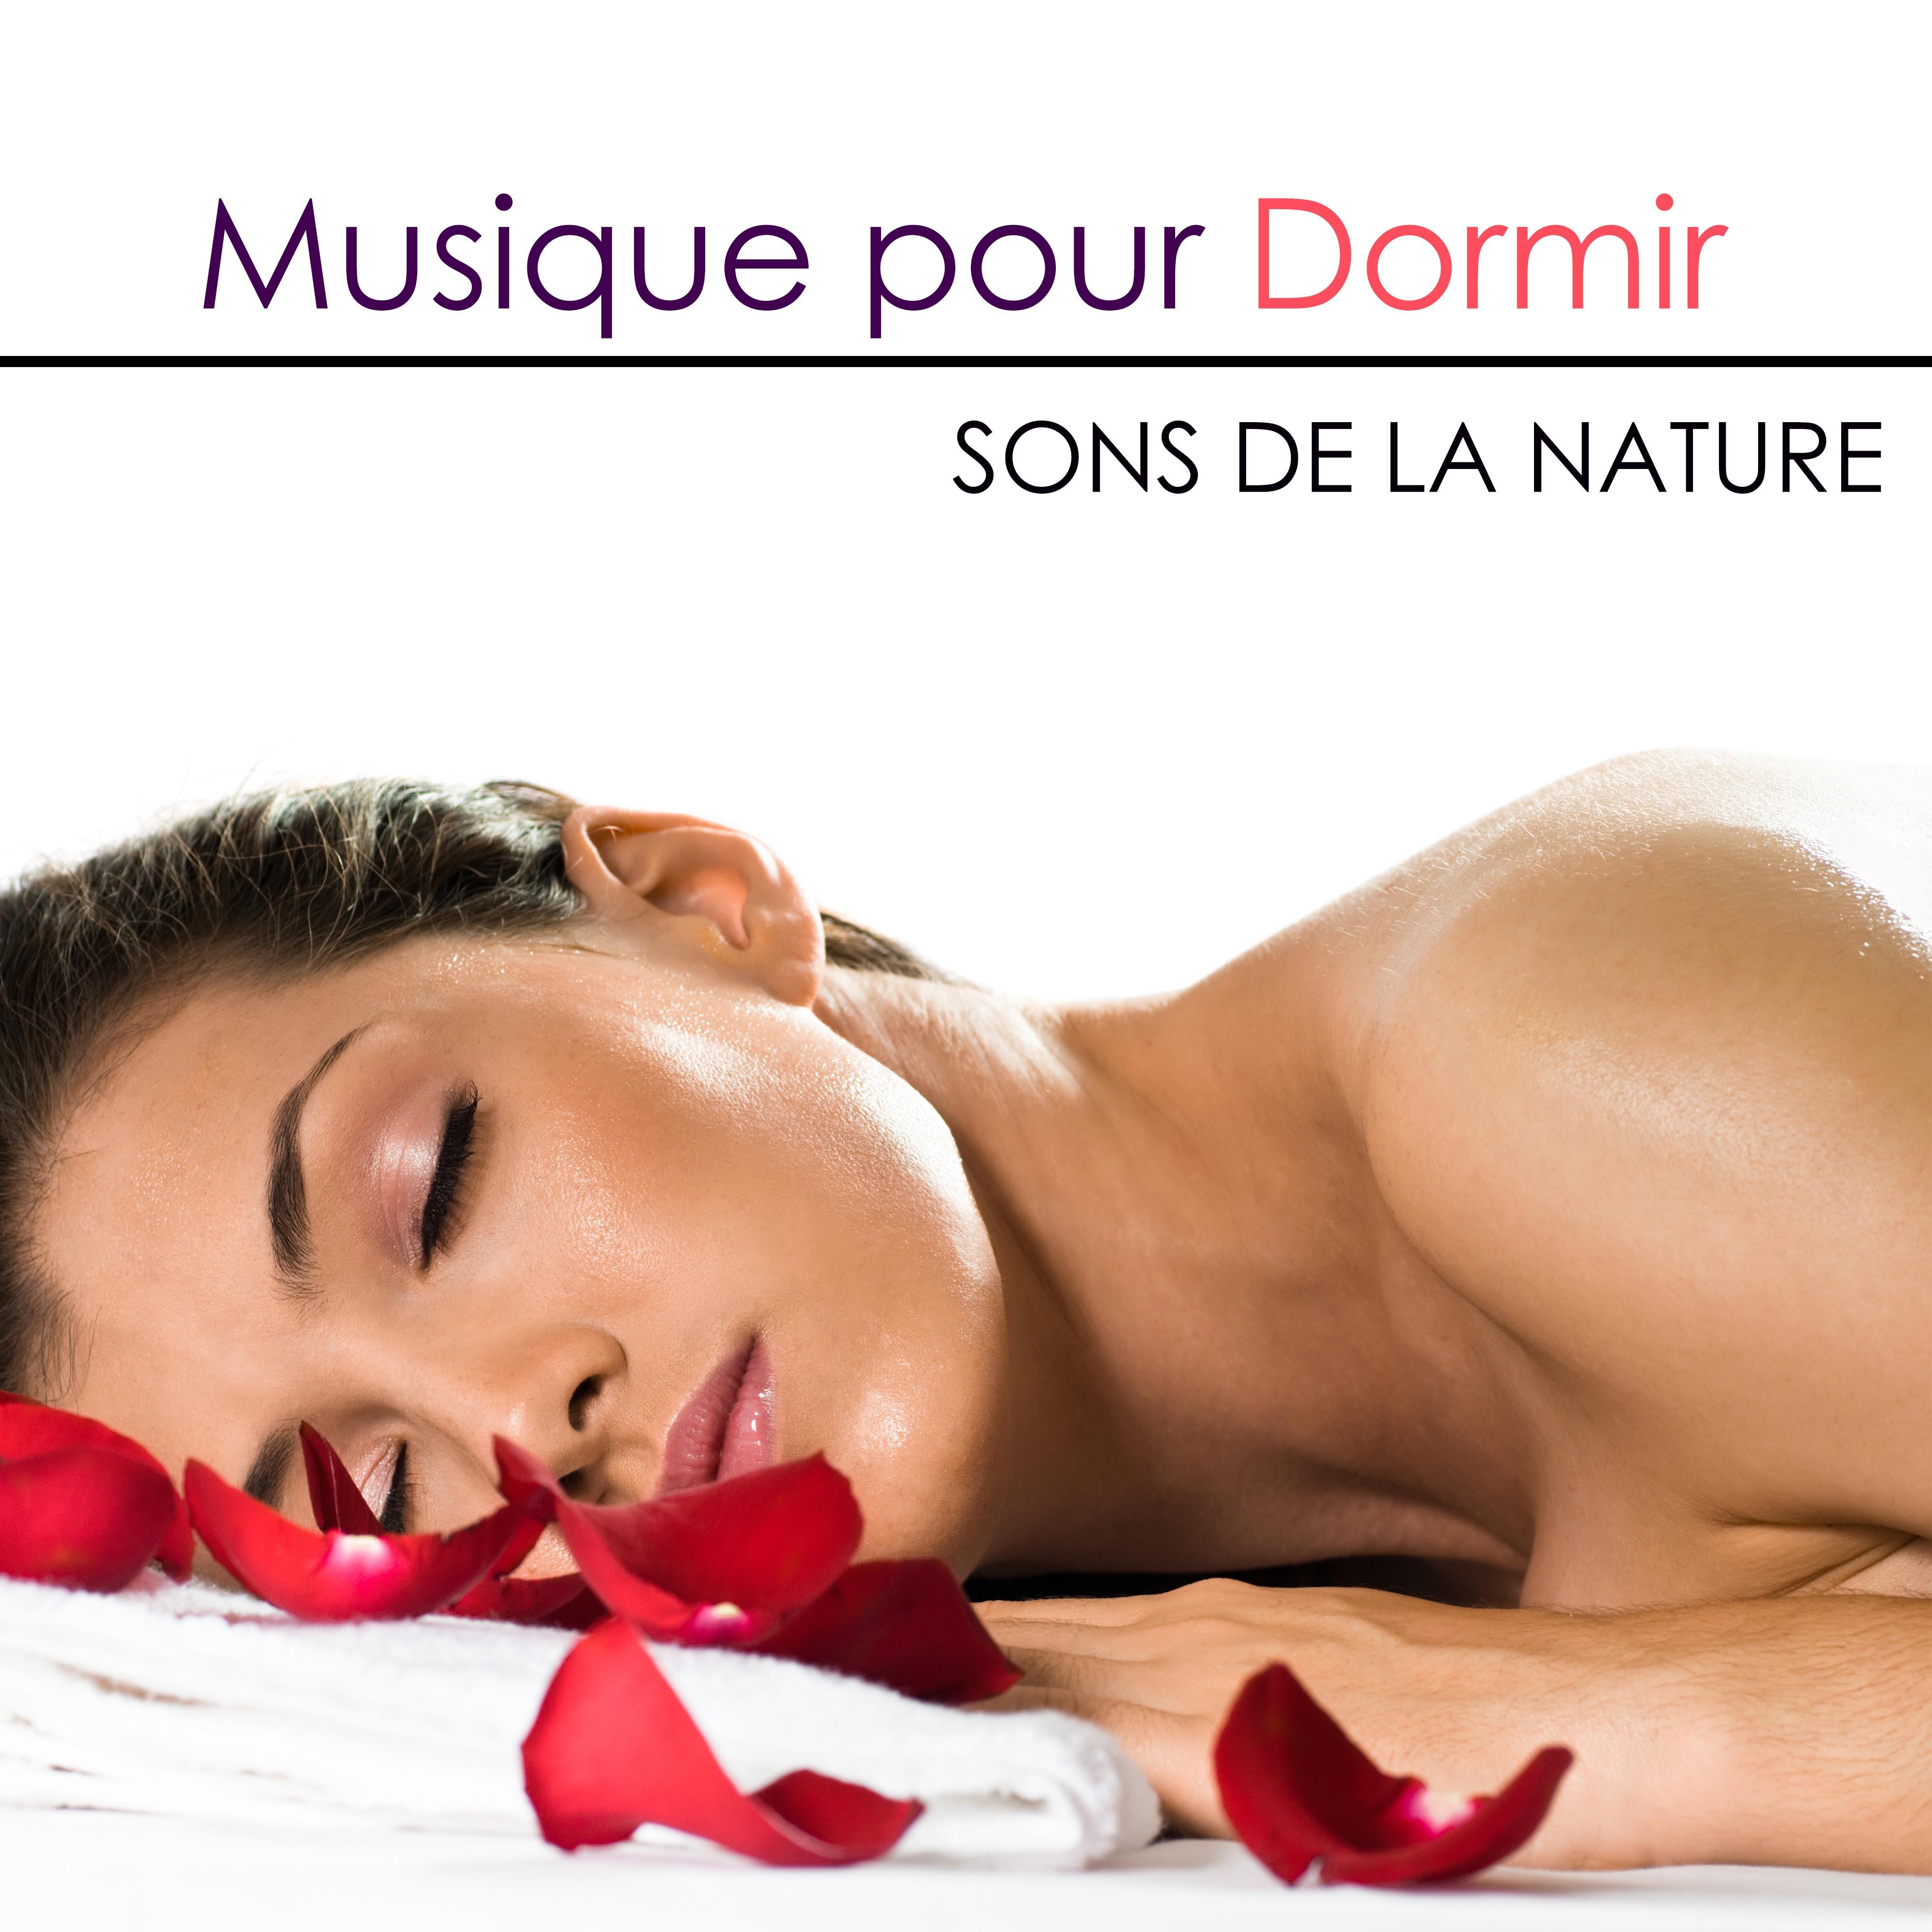 Musique pour Dormir - Musique Relaxante Douce pour Dormir et pour Trouver le Sommeil avec Sons de la Nature et Musiques de Piano